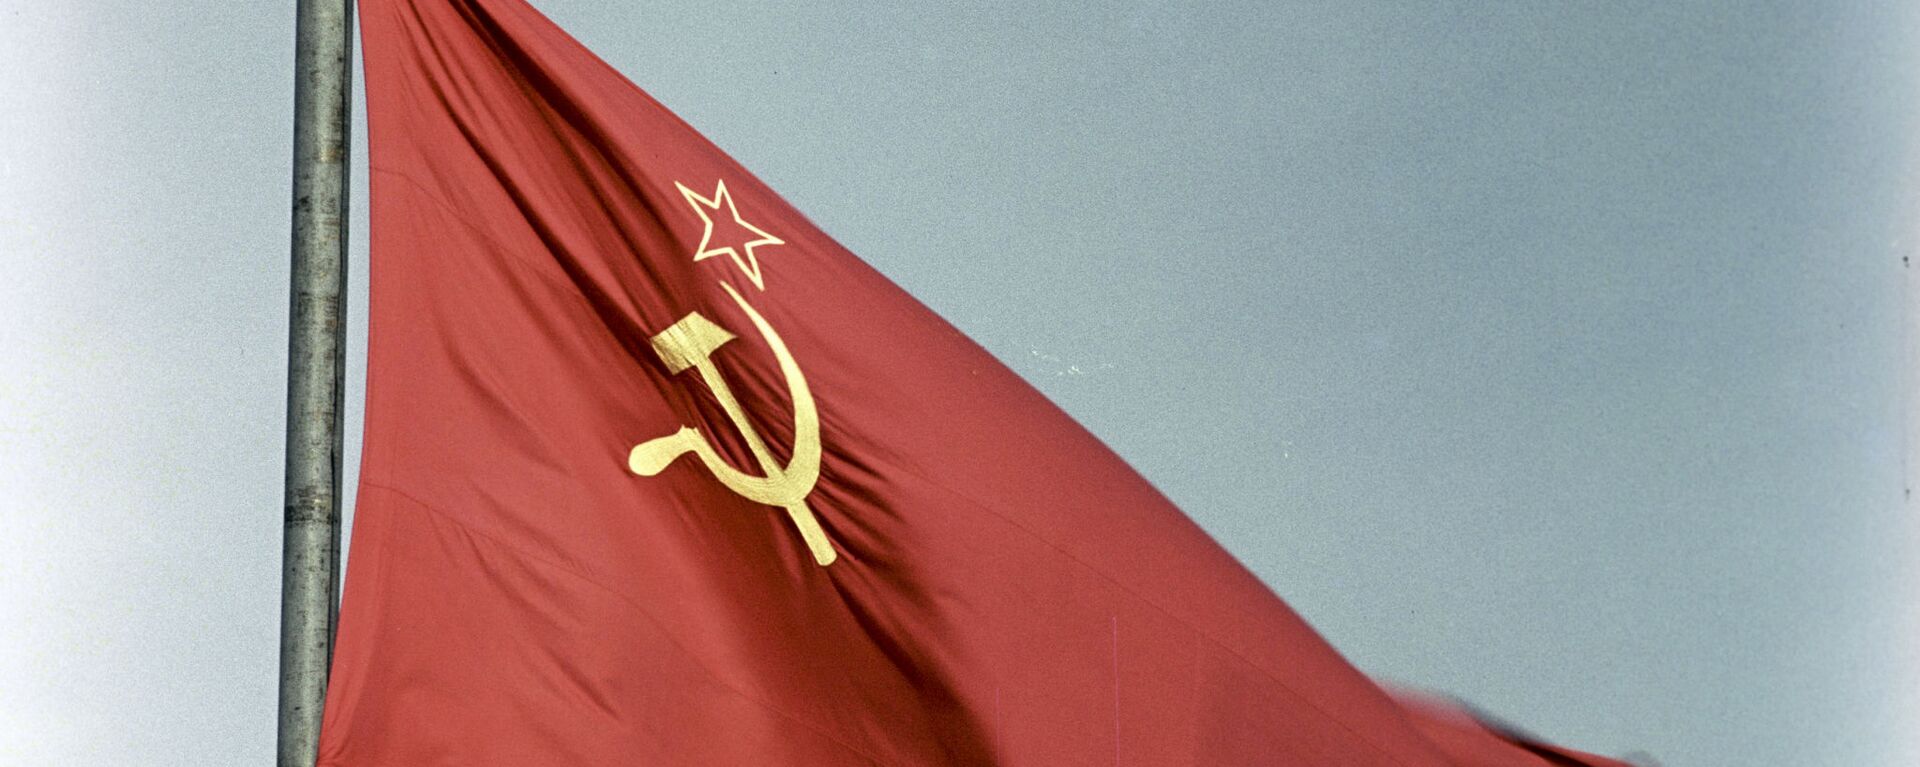 La bandera de la URSS - Sputnik Mundo, 1920, 08.12.2020